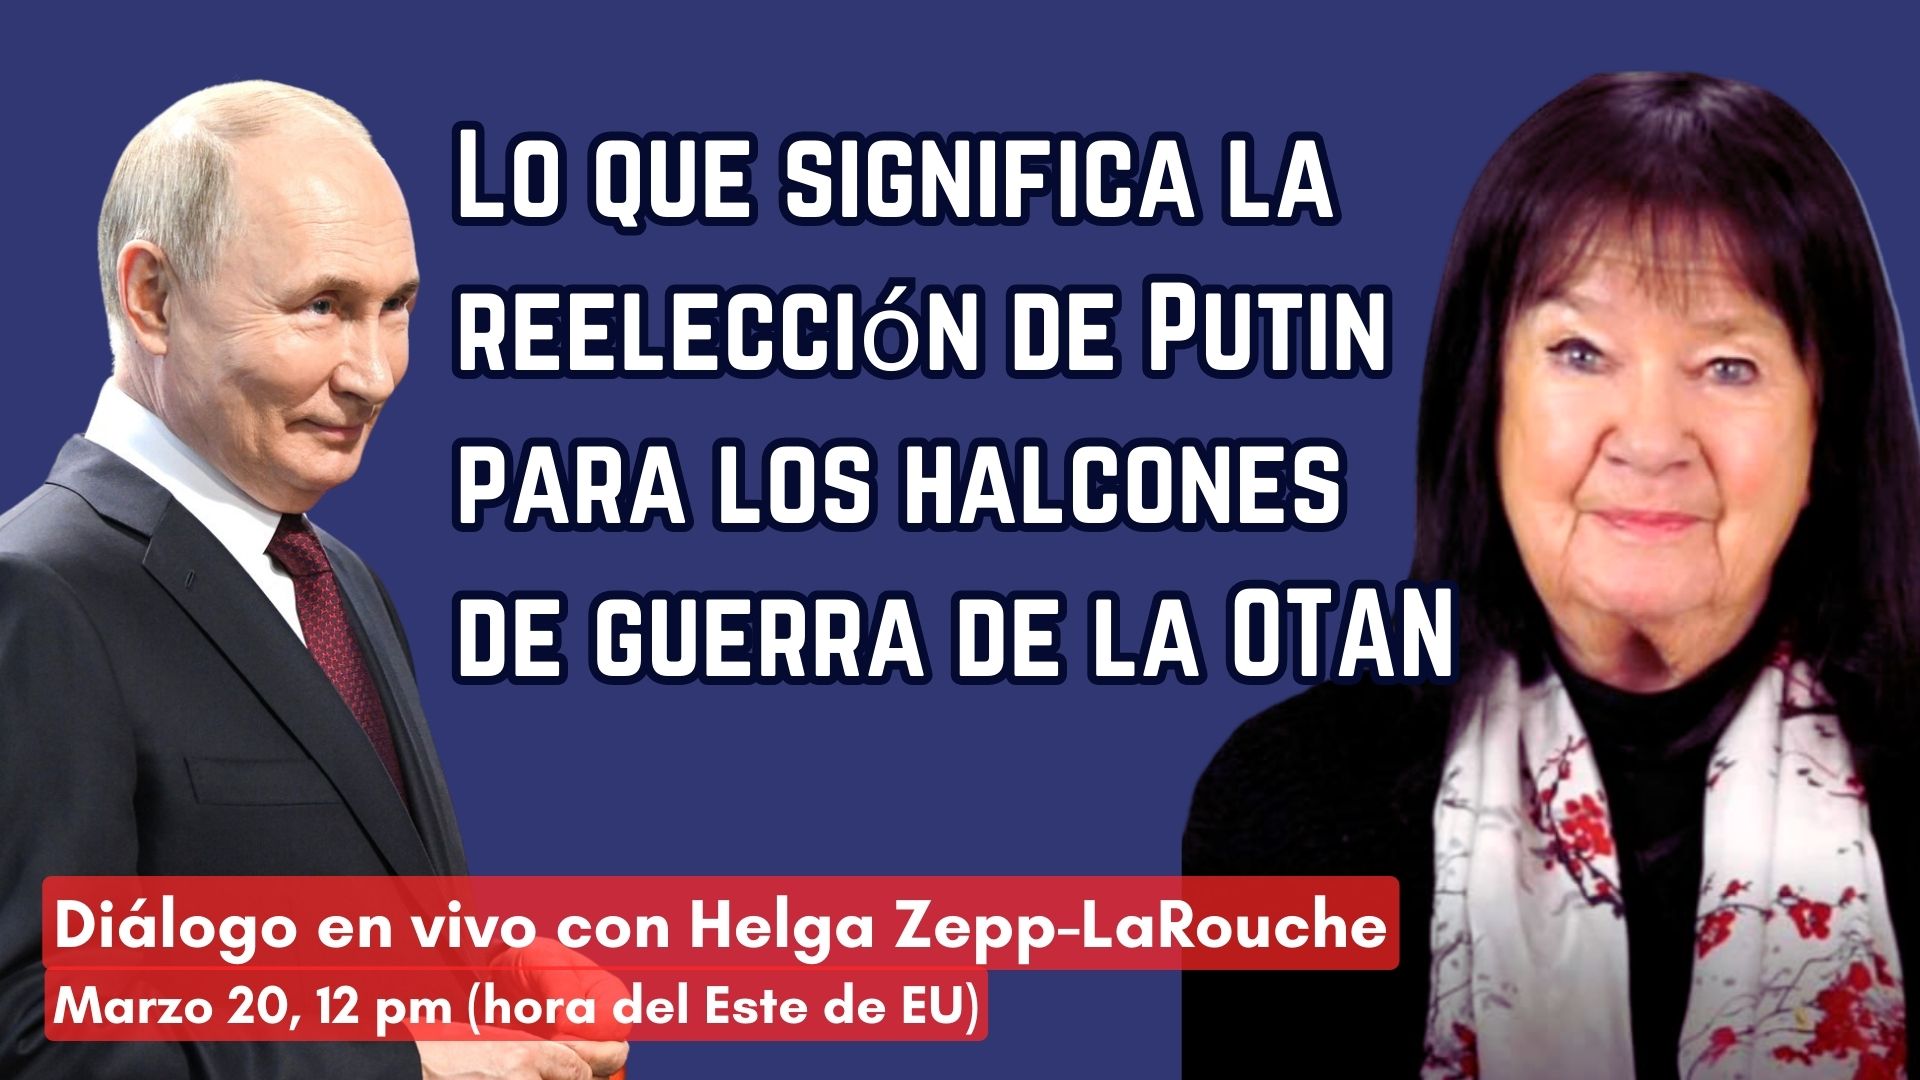 Lo que significa la reelección de Putin 
para los halcones de guerra de la OTAN 
Diálogo en VIVO con Helga Zepp-LaRouche 
Marzo 20, 11:00 am (H/Este de EU).